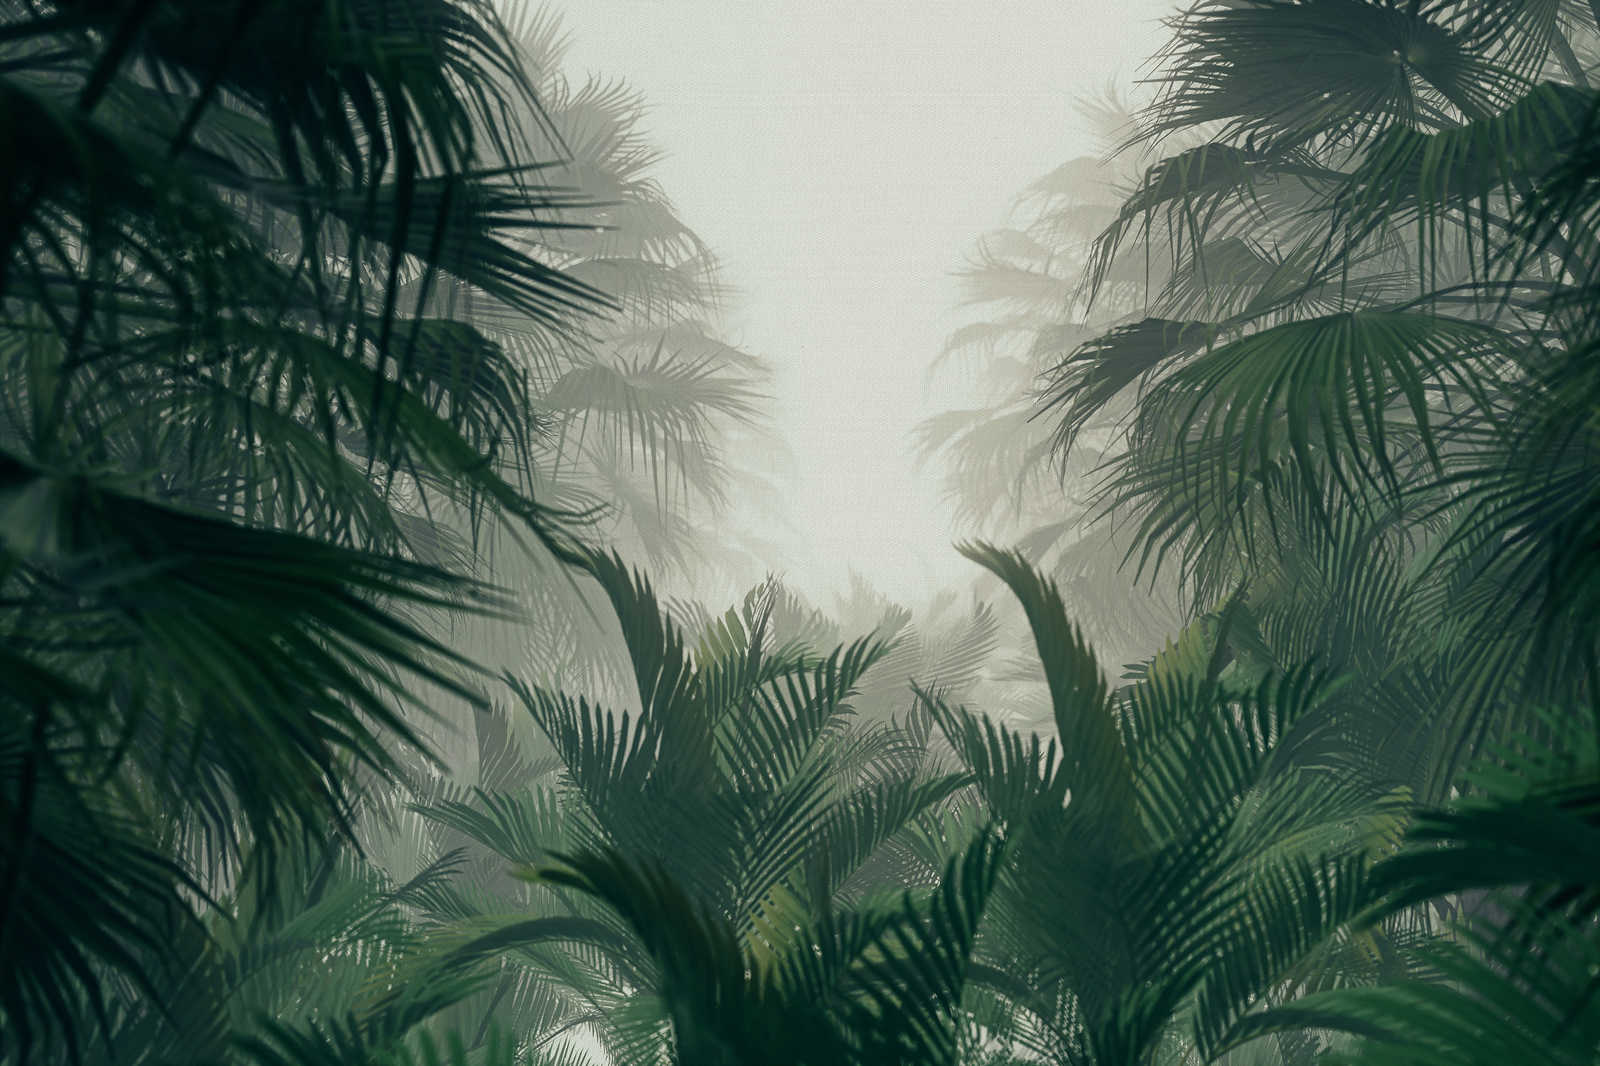             Toile avec vue sur la jungle à la saison des pluies - 0,90 m x 0,60 m
        